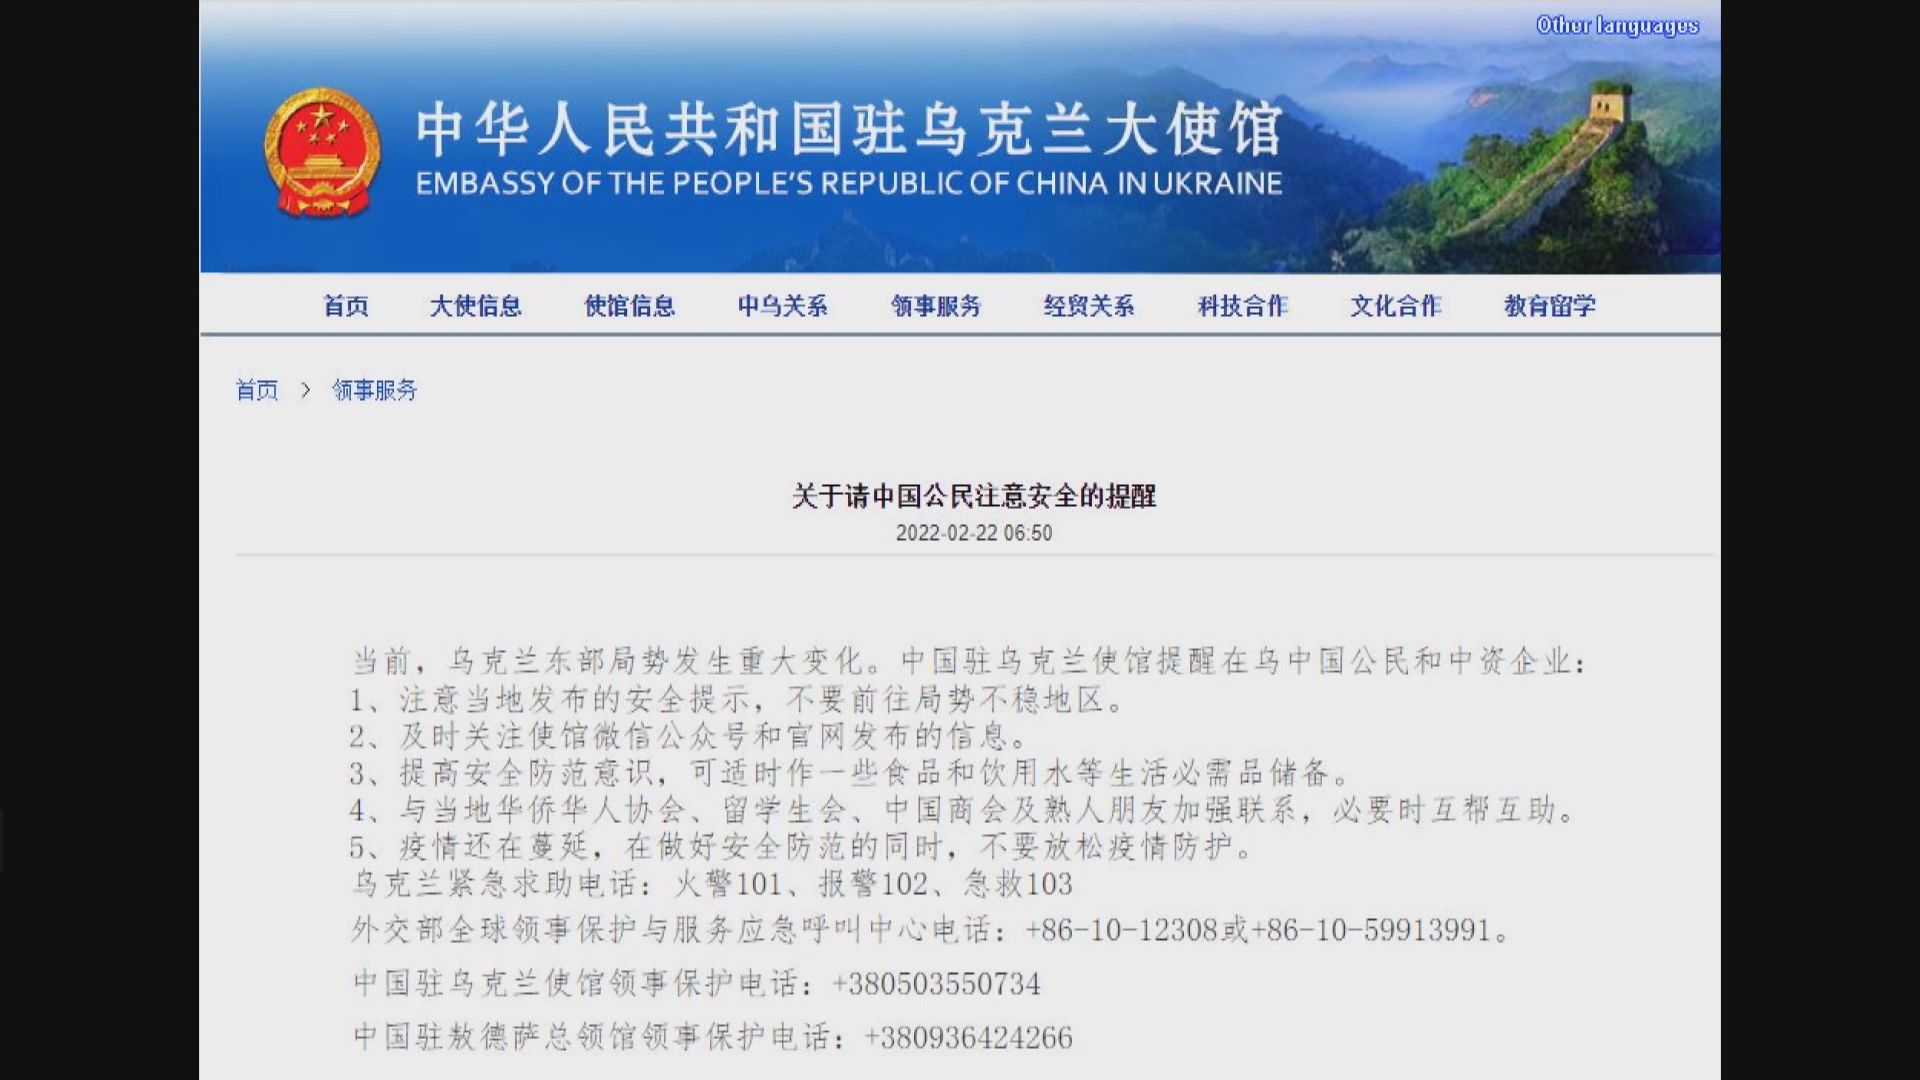 中國駐烏克蘭大使館提醒中國公民和中資企業注意安全